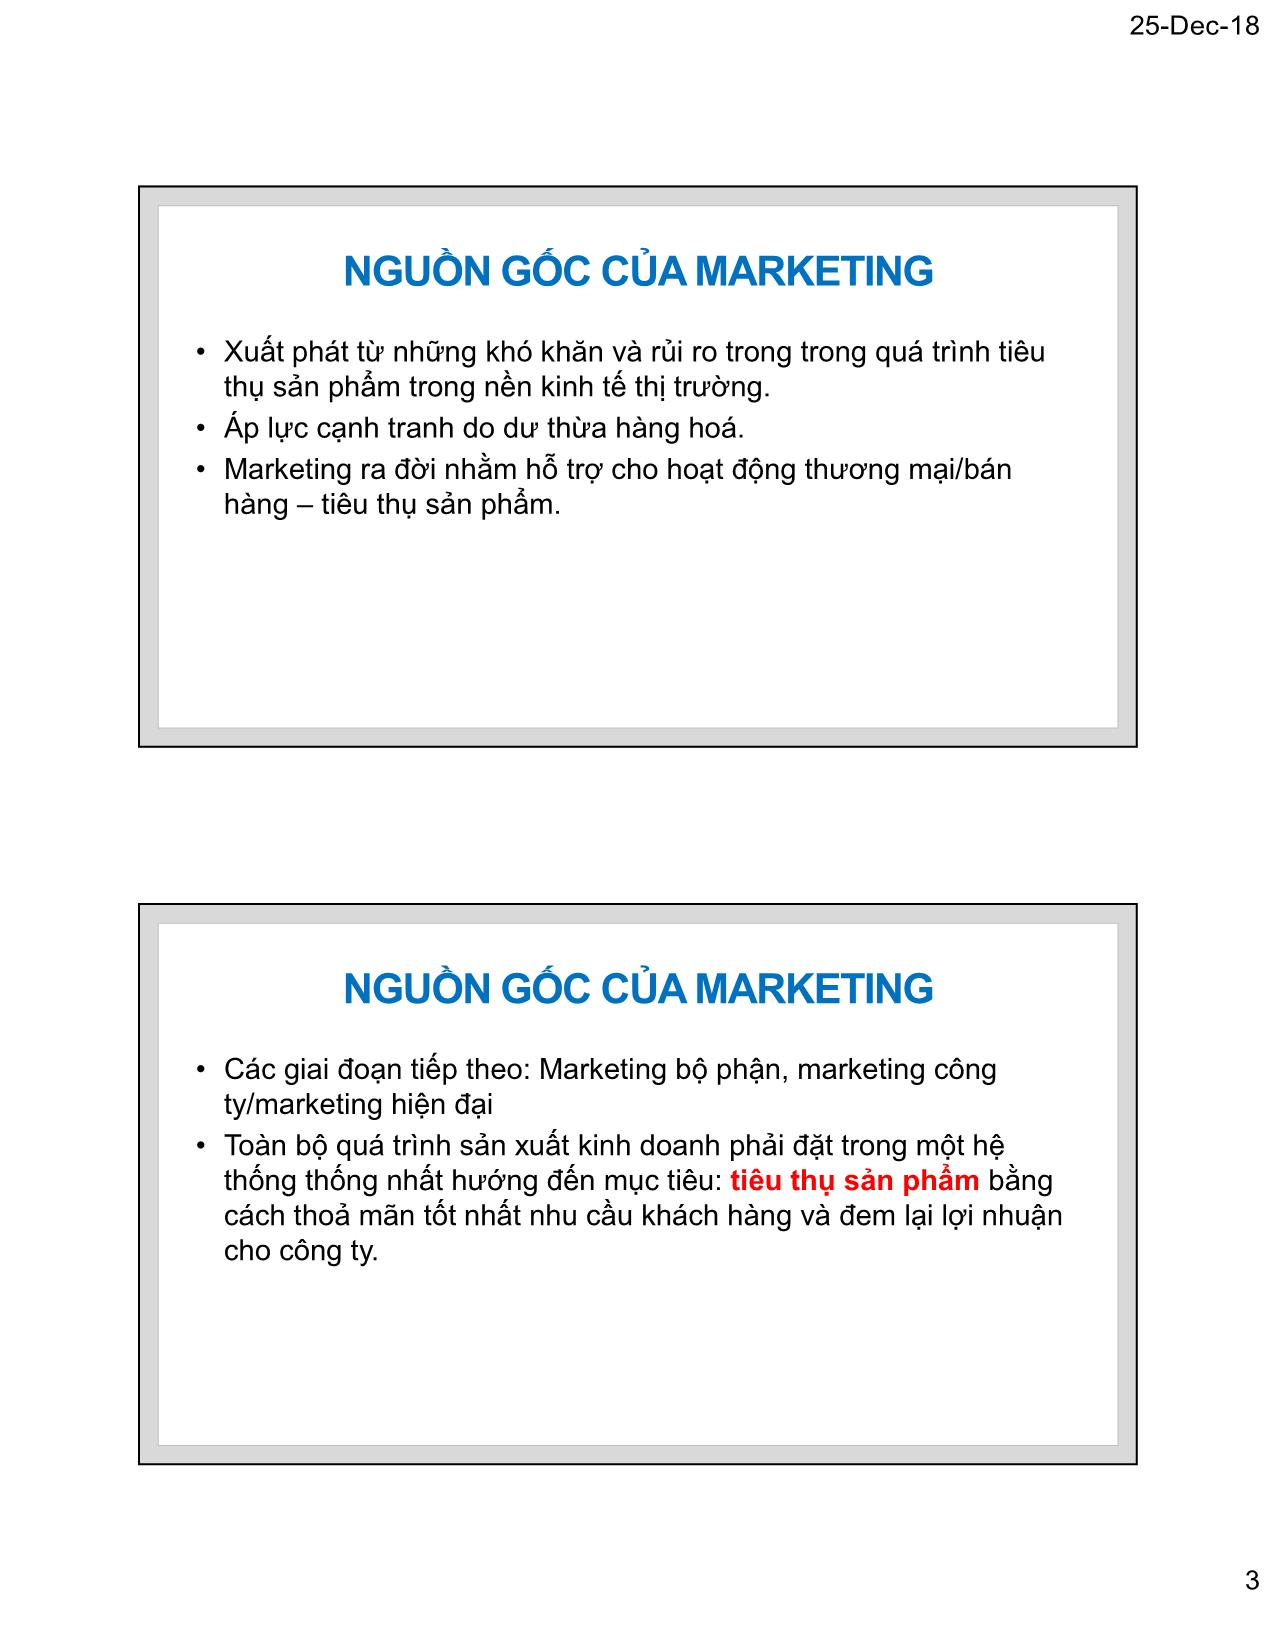 Bài giảng Marketing thương mại - Chương 1: Tư tưởng cơ bản của Marketing thương mại - Nguyễn Tường Huy trang 3